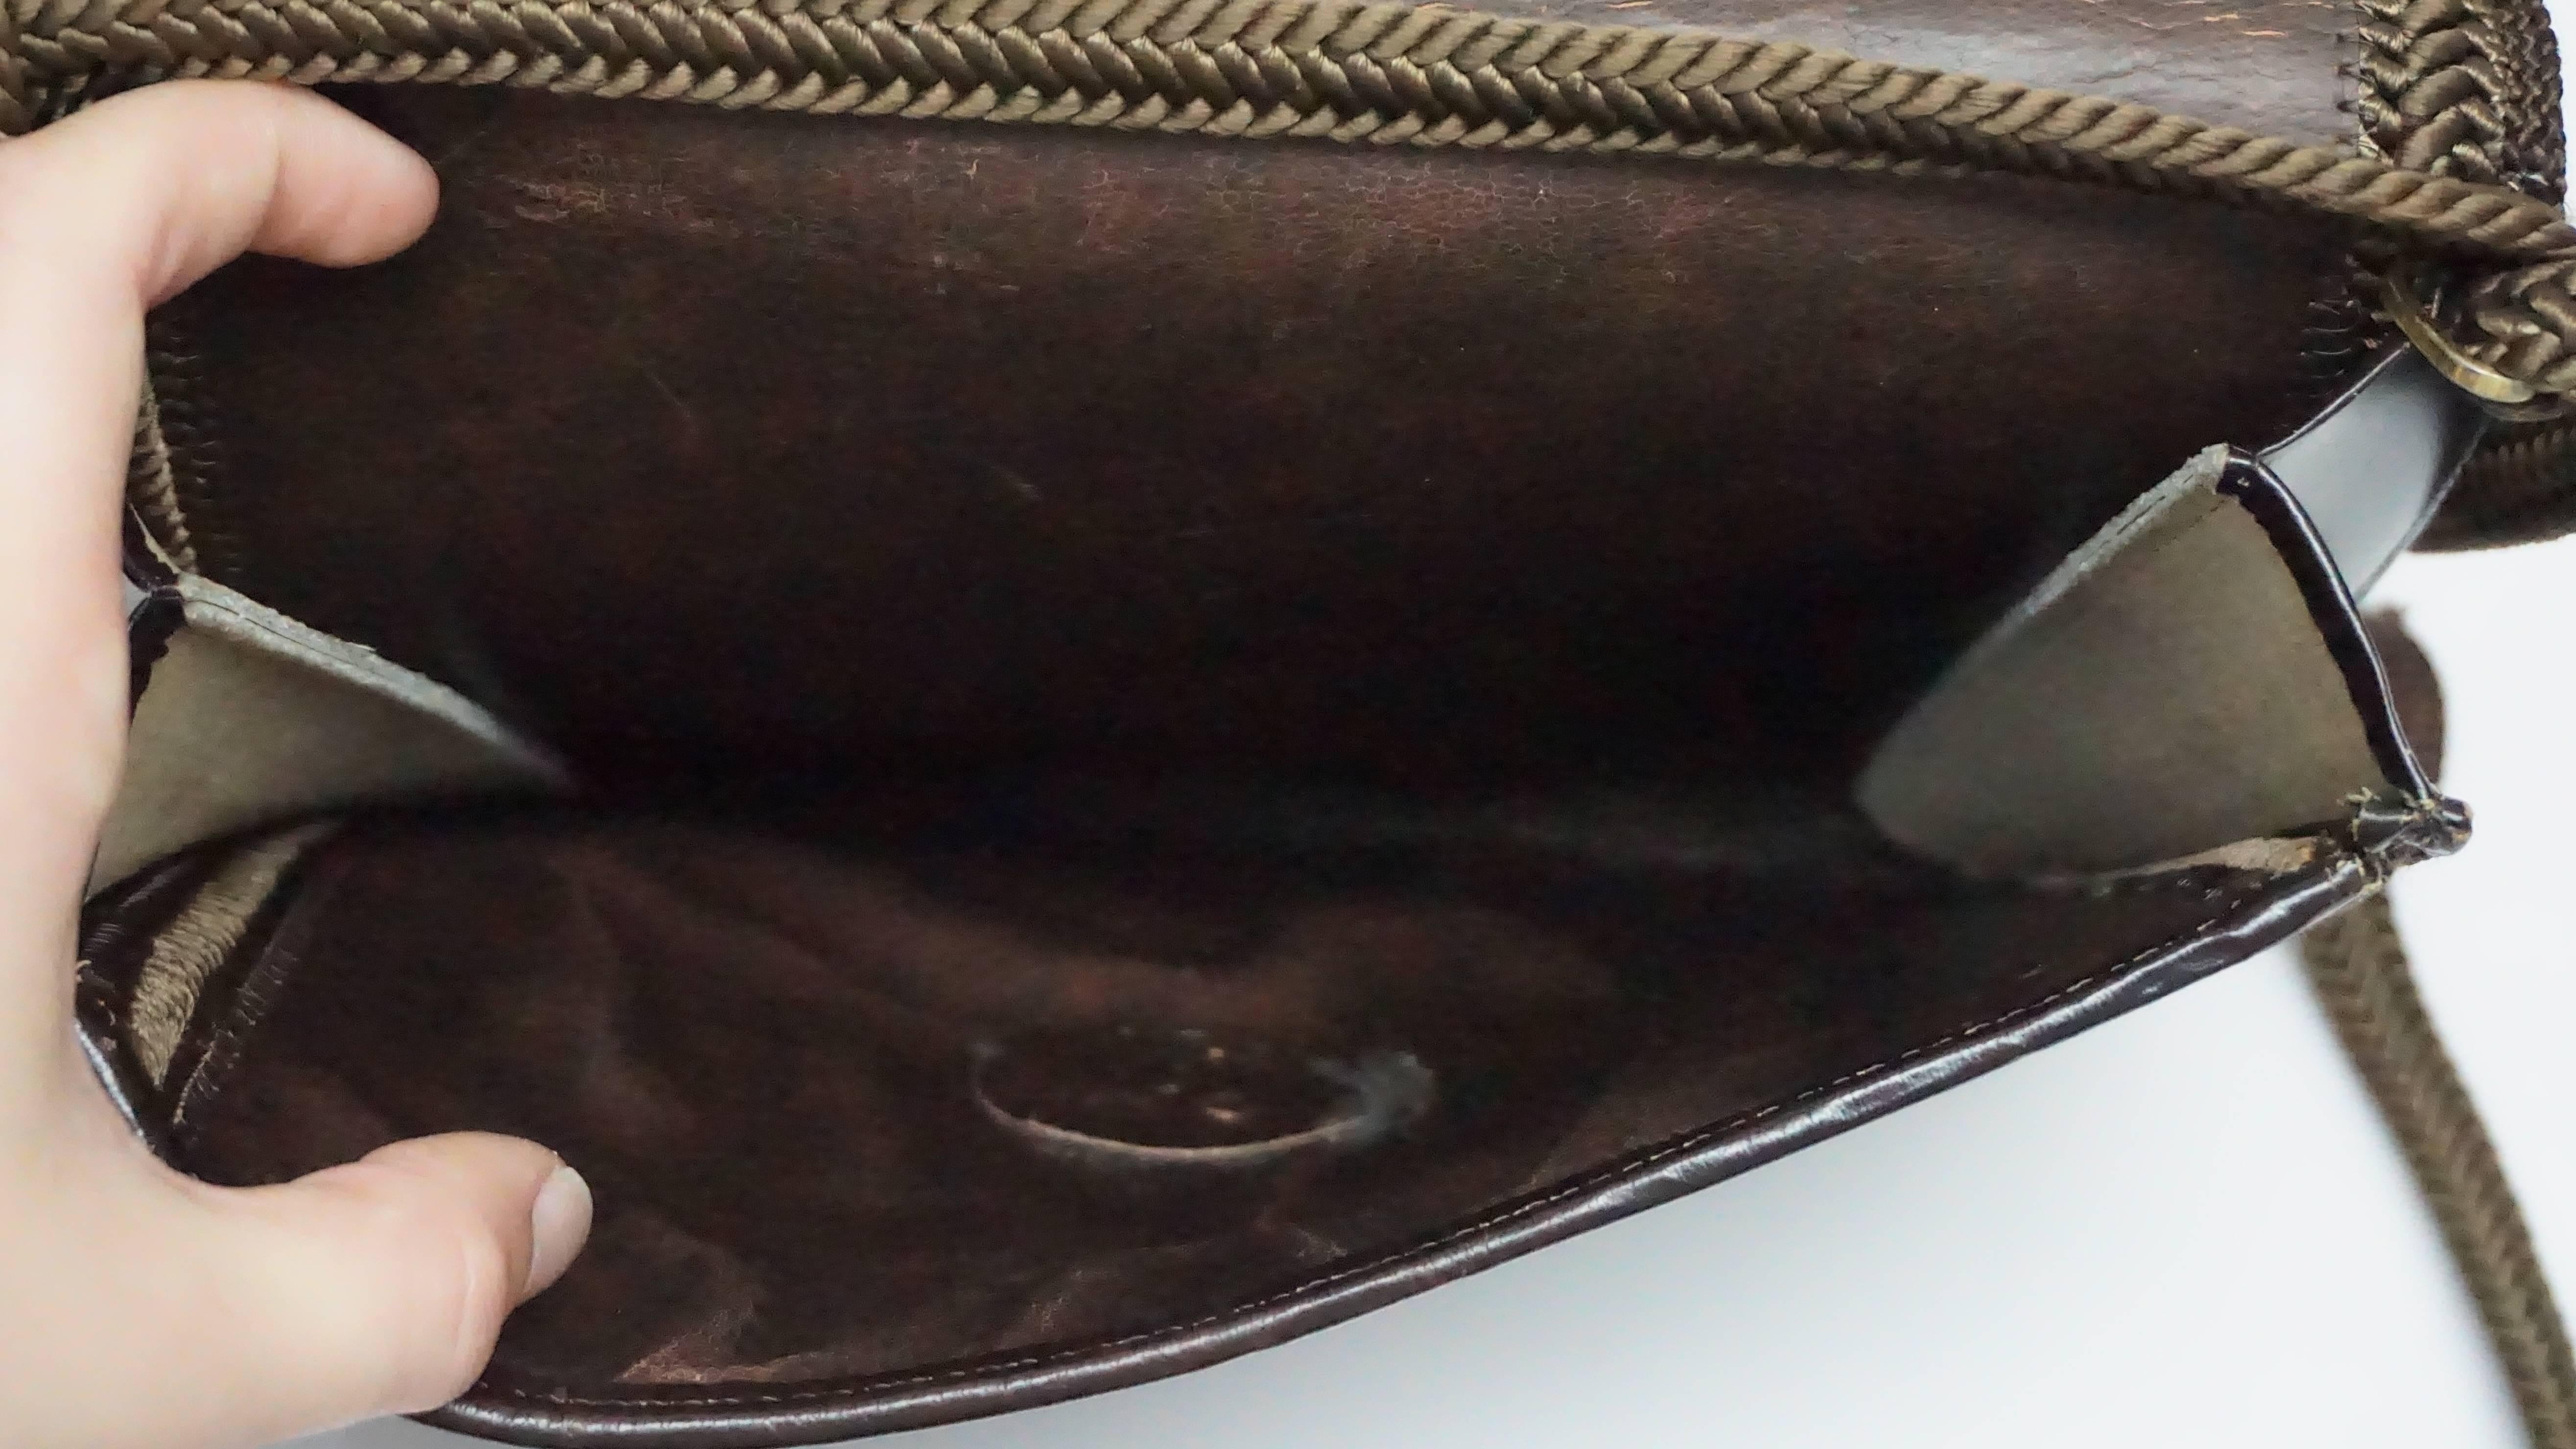 Emanuel Ungaro Schokoladenbraune Ponyhaar-Kreuztasche  Diese schöne Vintage Ungaro Tasche ist in ausgezeichnetem Zustand. Die Tasche ist komplett mit schokoladenbraunem Ponyhaar überzogen und mit einem geflochtenen Detail aus Seide verziert. Der